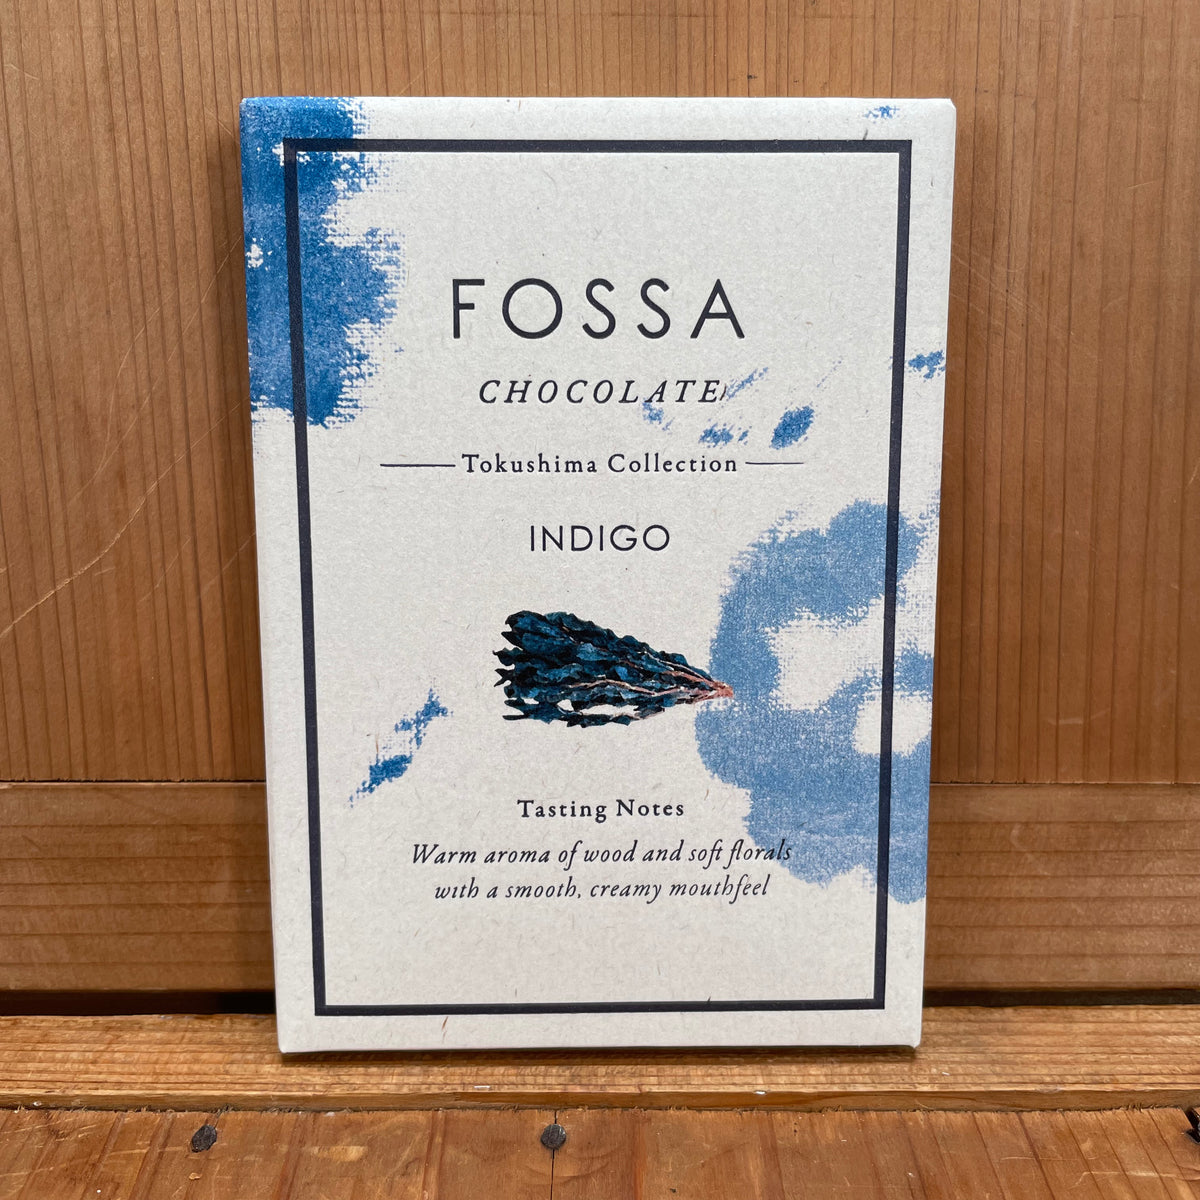 Fossa Tokushima Collection Indigo White Chocolate - 50g